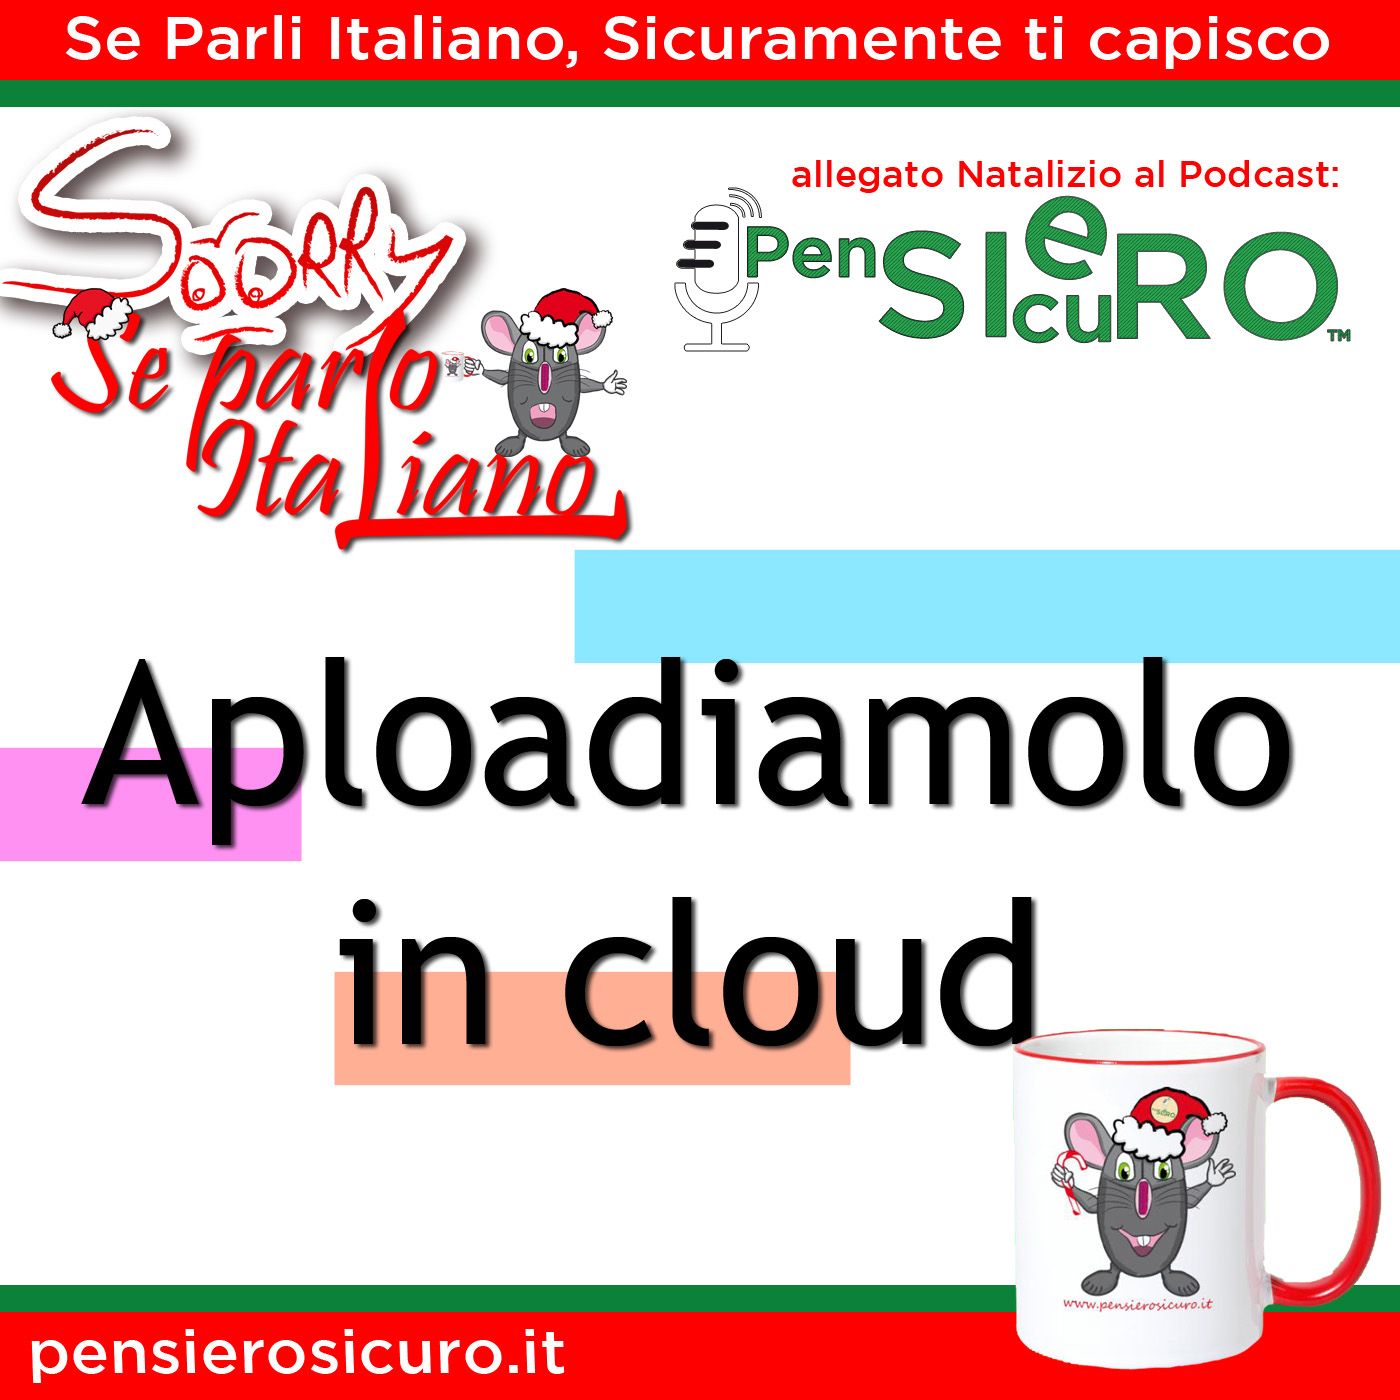 Sorry Se Parlo Italiano #15 - Aploadiamolo in cloud